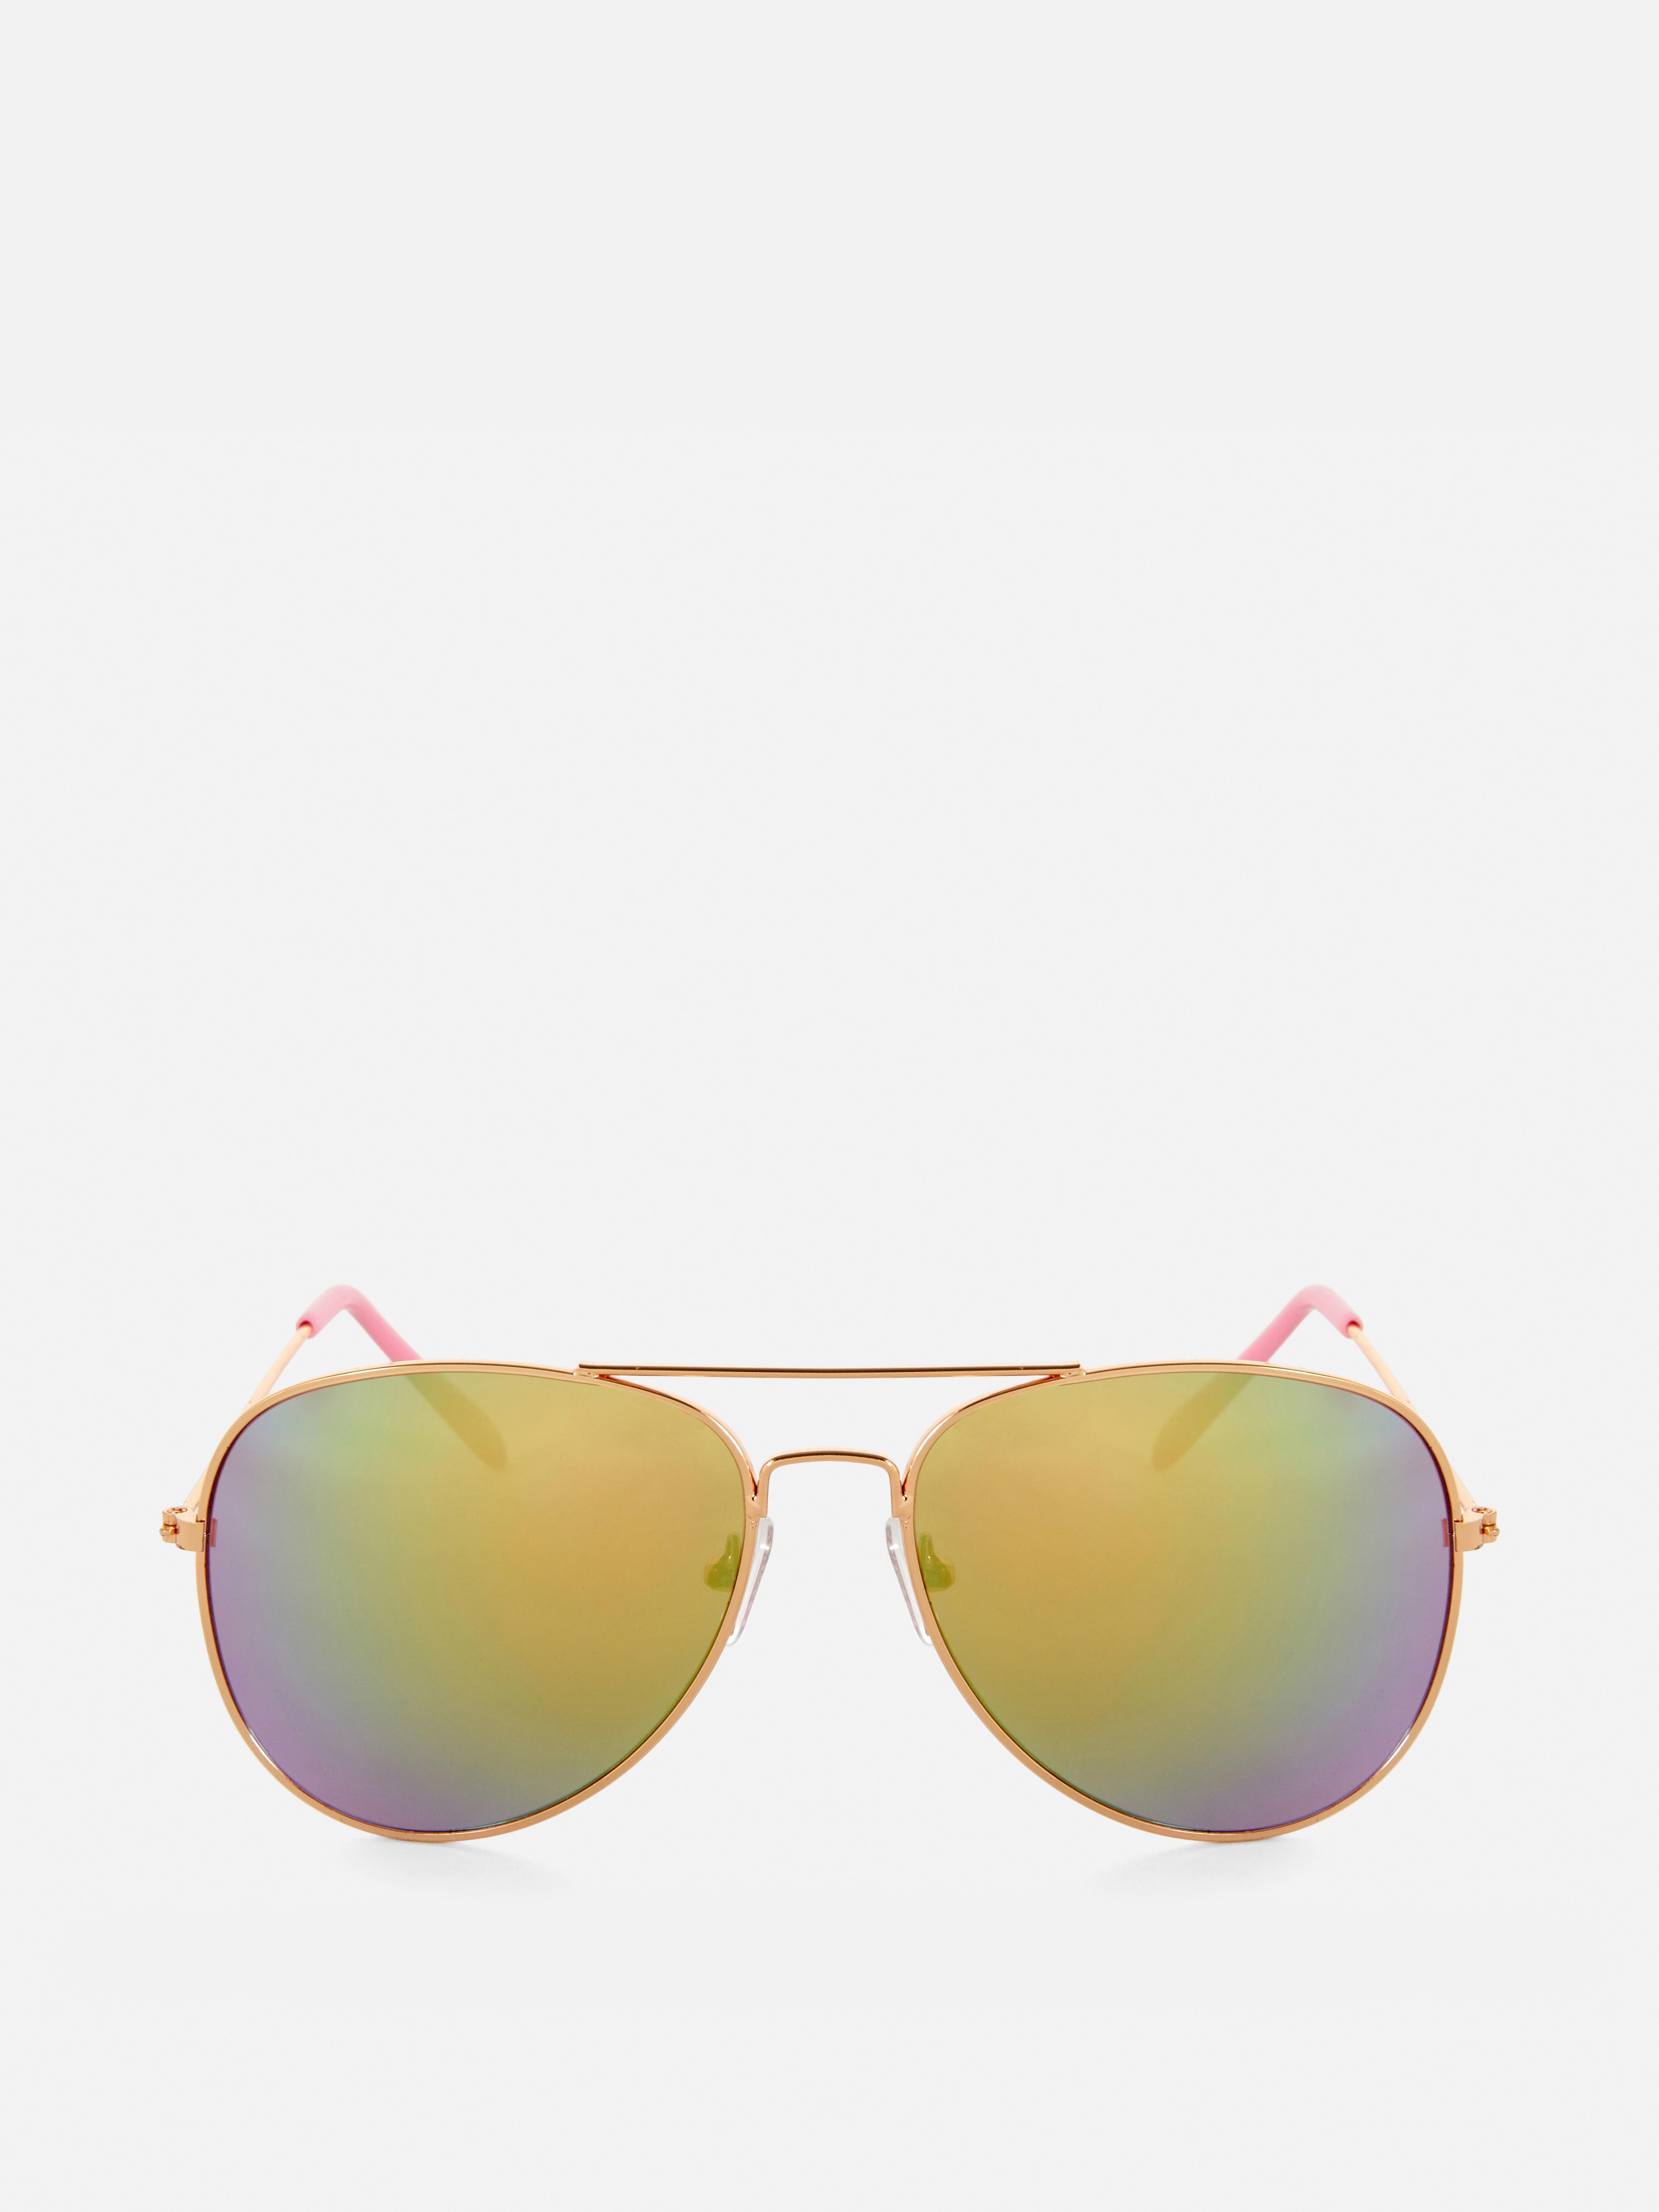 Óculos sol tipo aviador lentes arco-íris